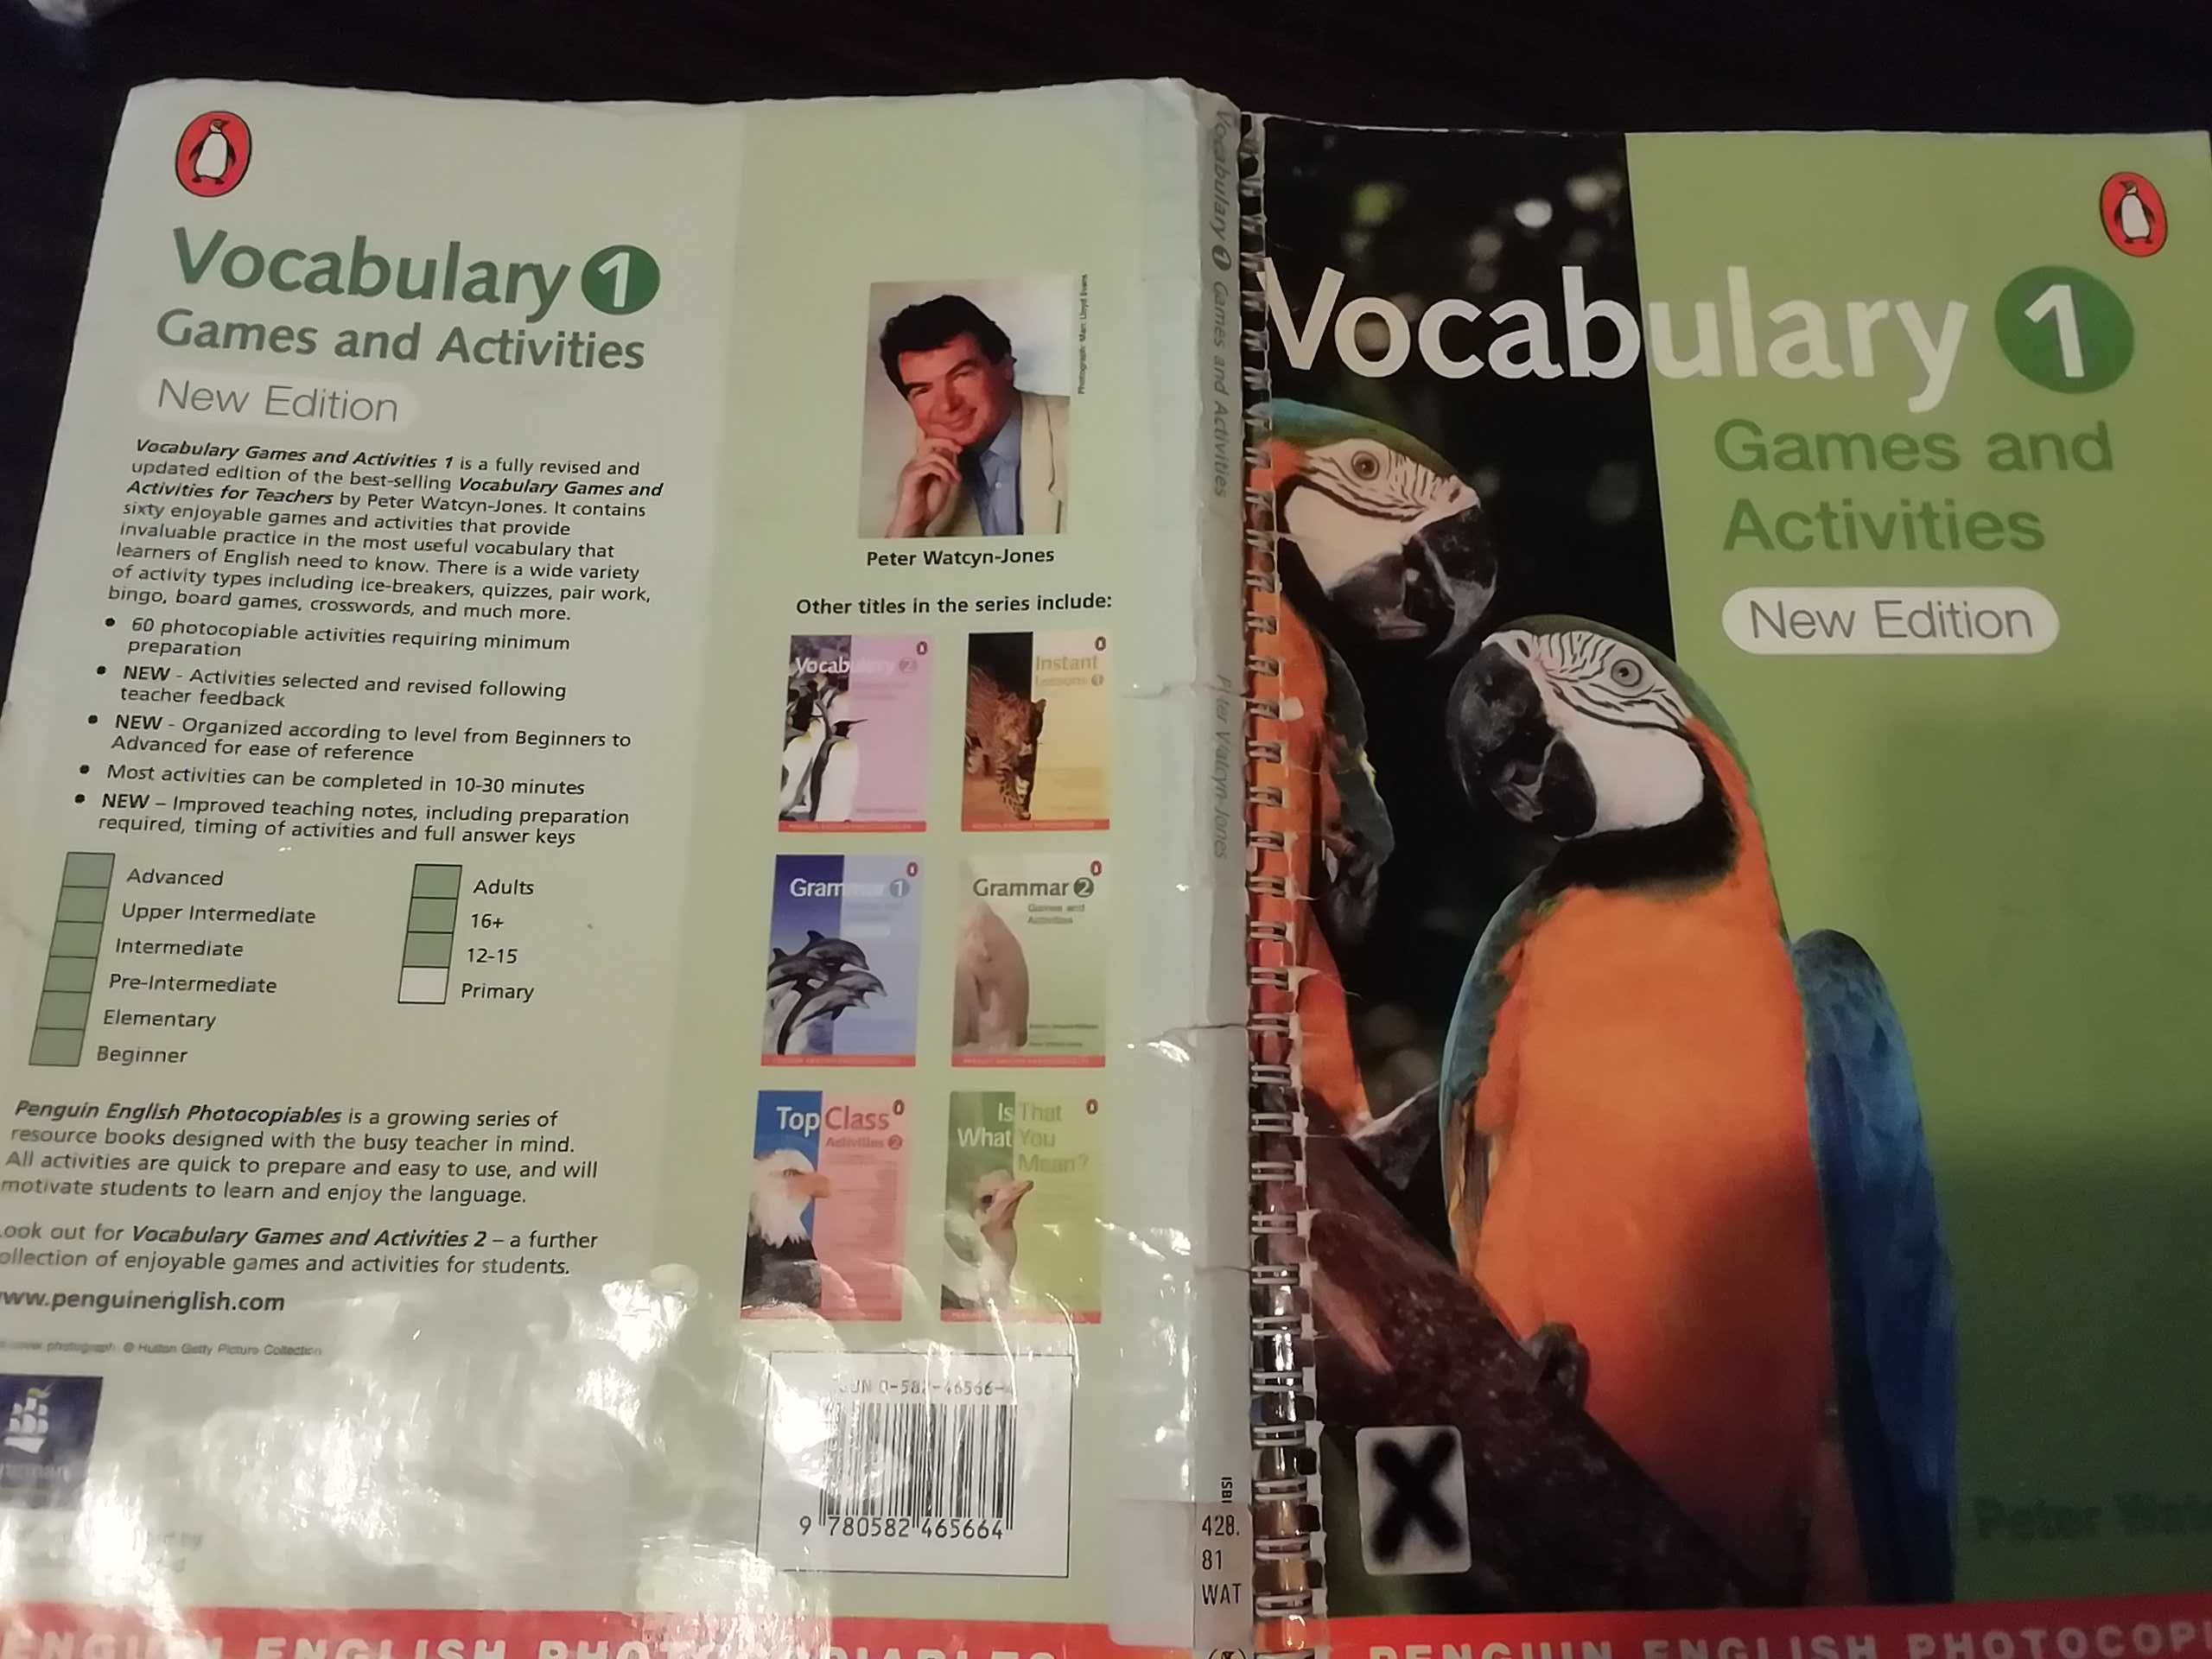 Vocabulary 1, games and activities, Watcyn Jones, element-intermediate